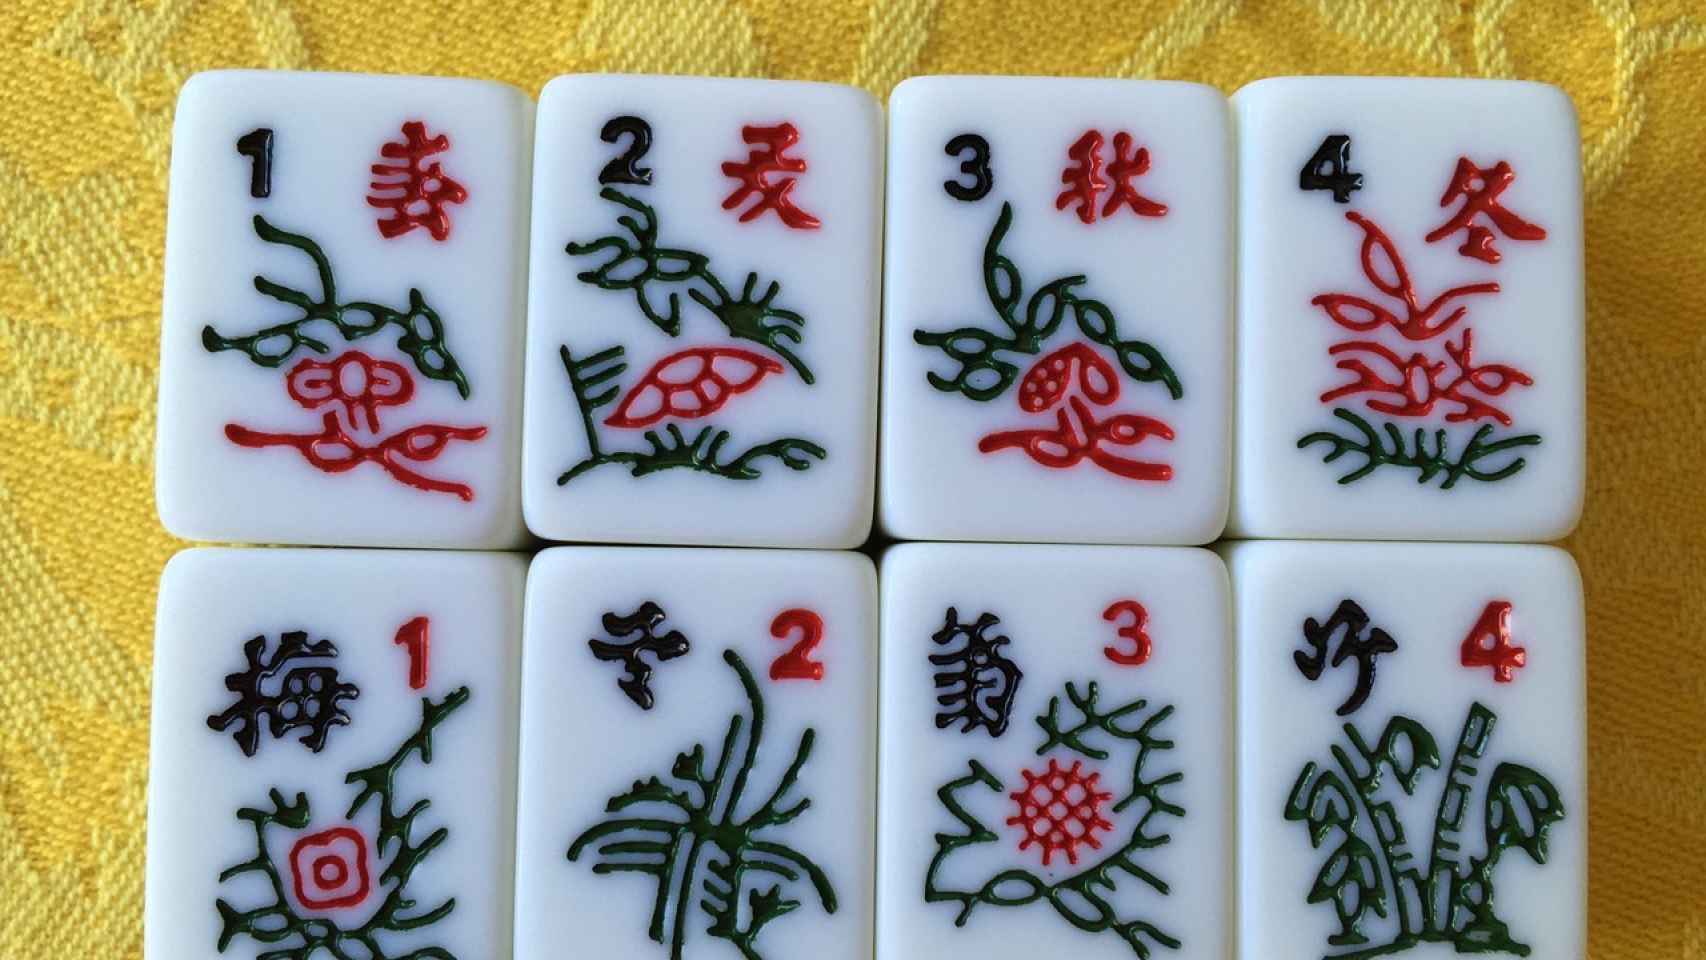 Incentivo Destreza Goneryl Cómo jugar al Mahjong, un juego de mesa asiático